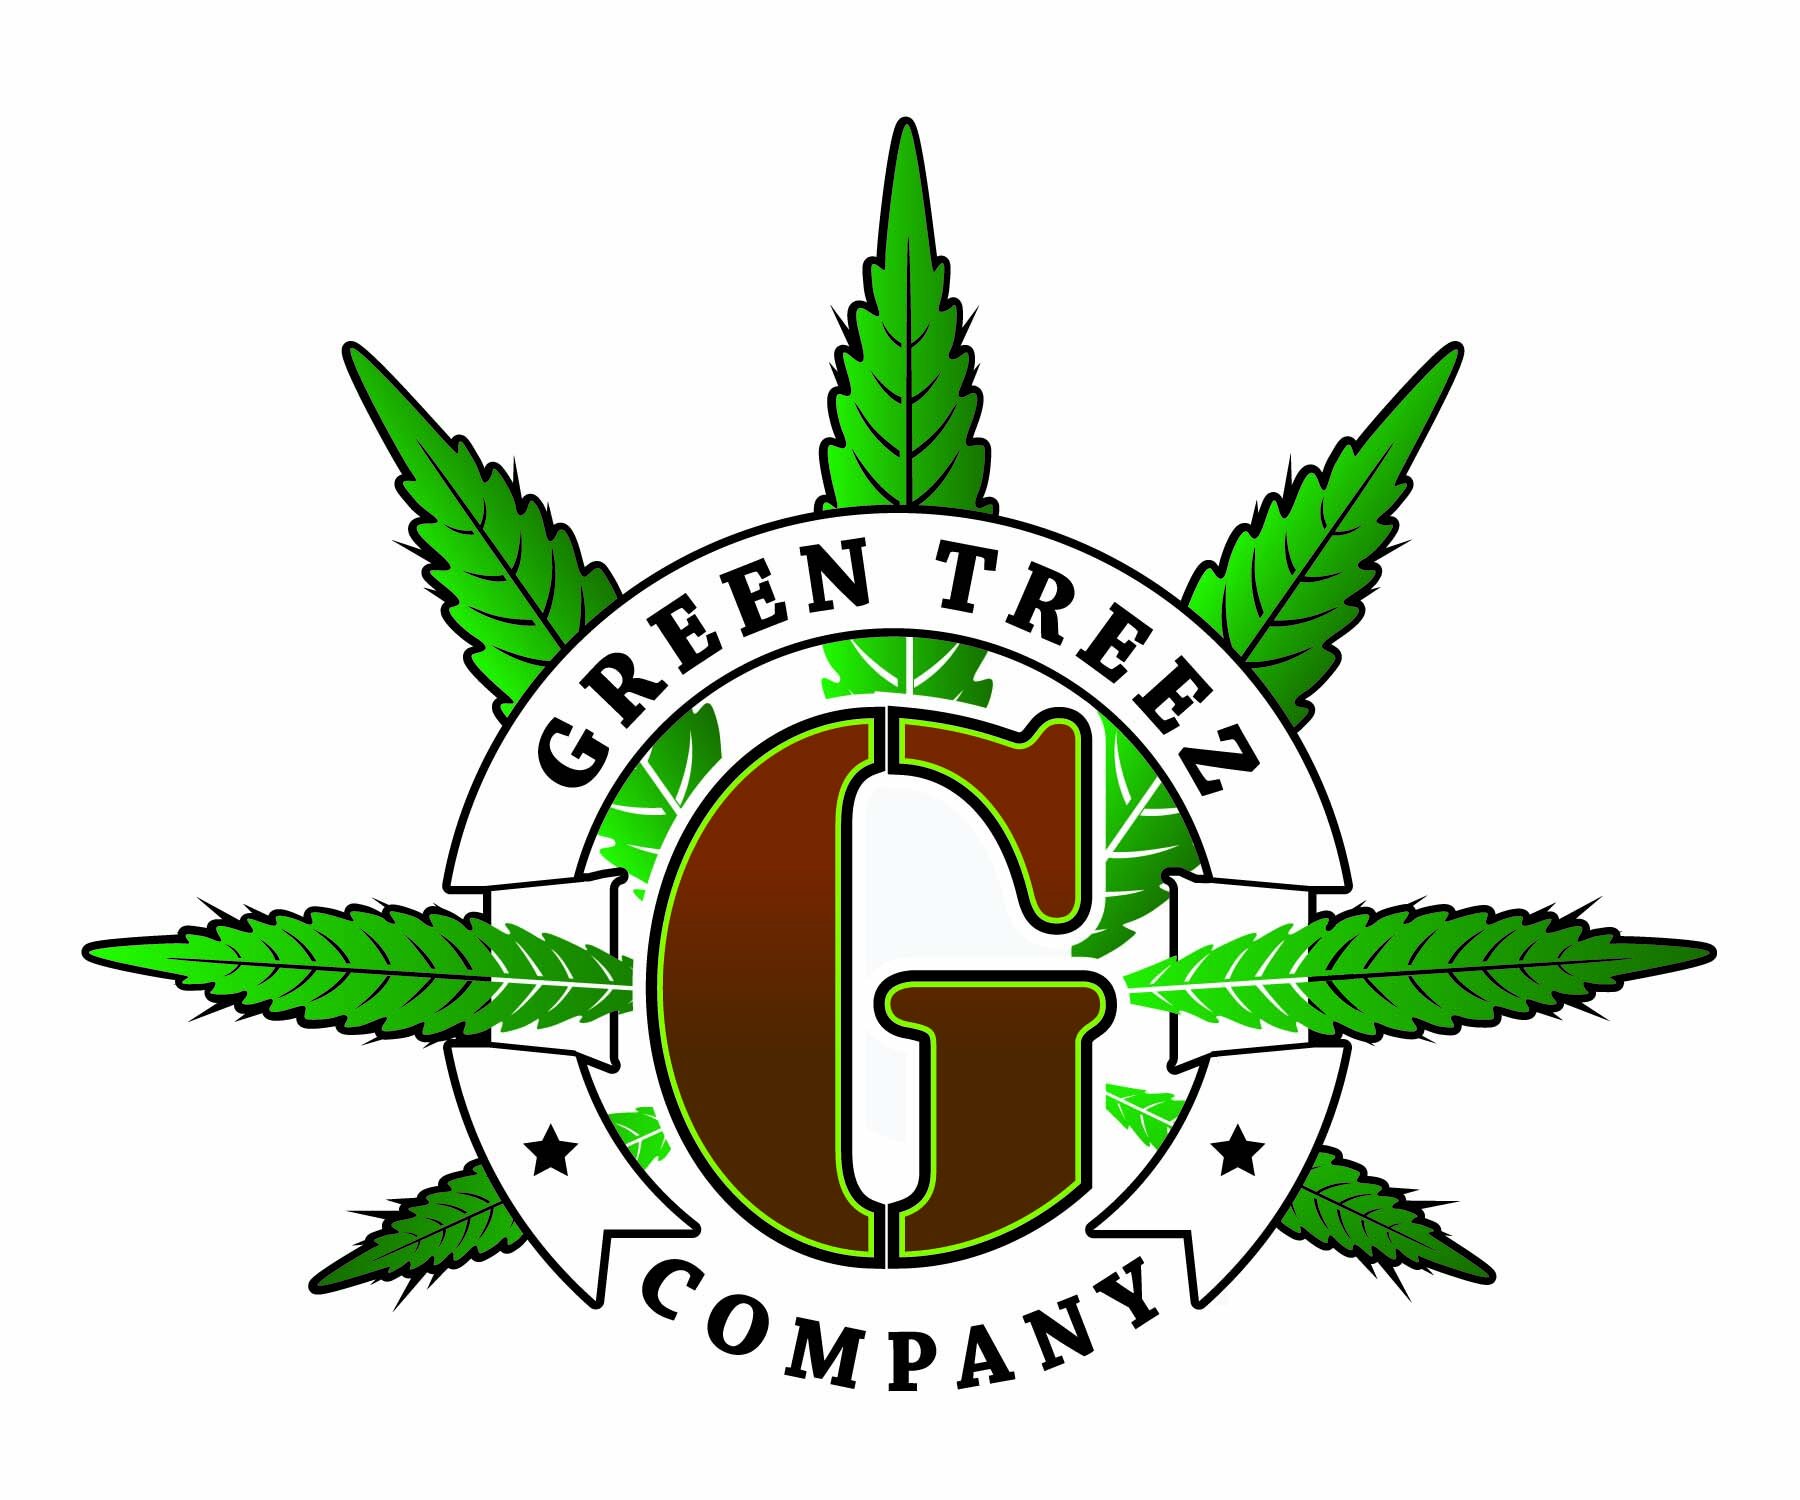 Green Treez Company